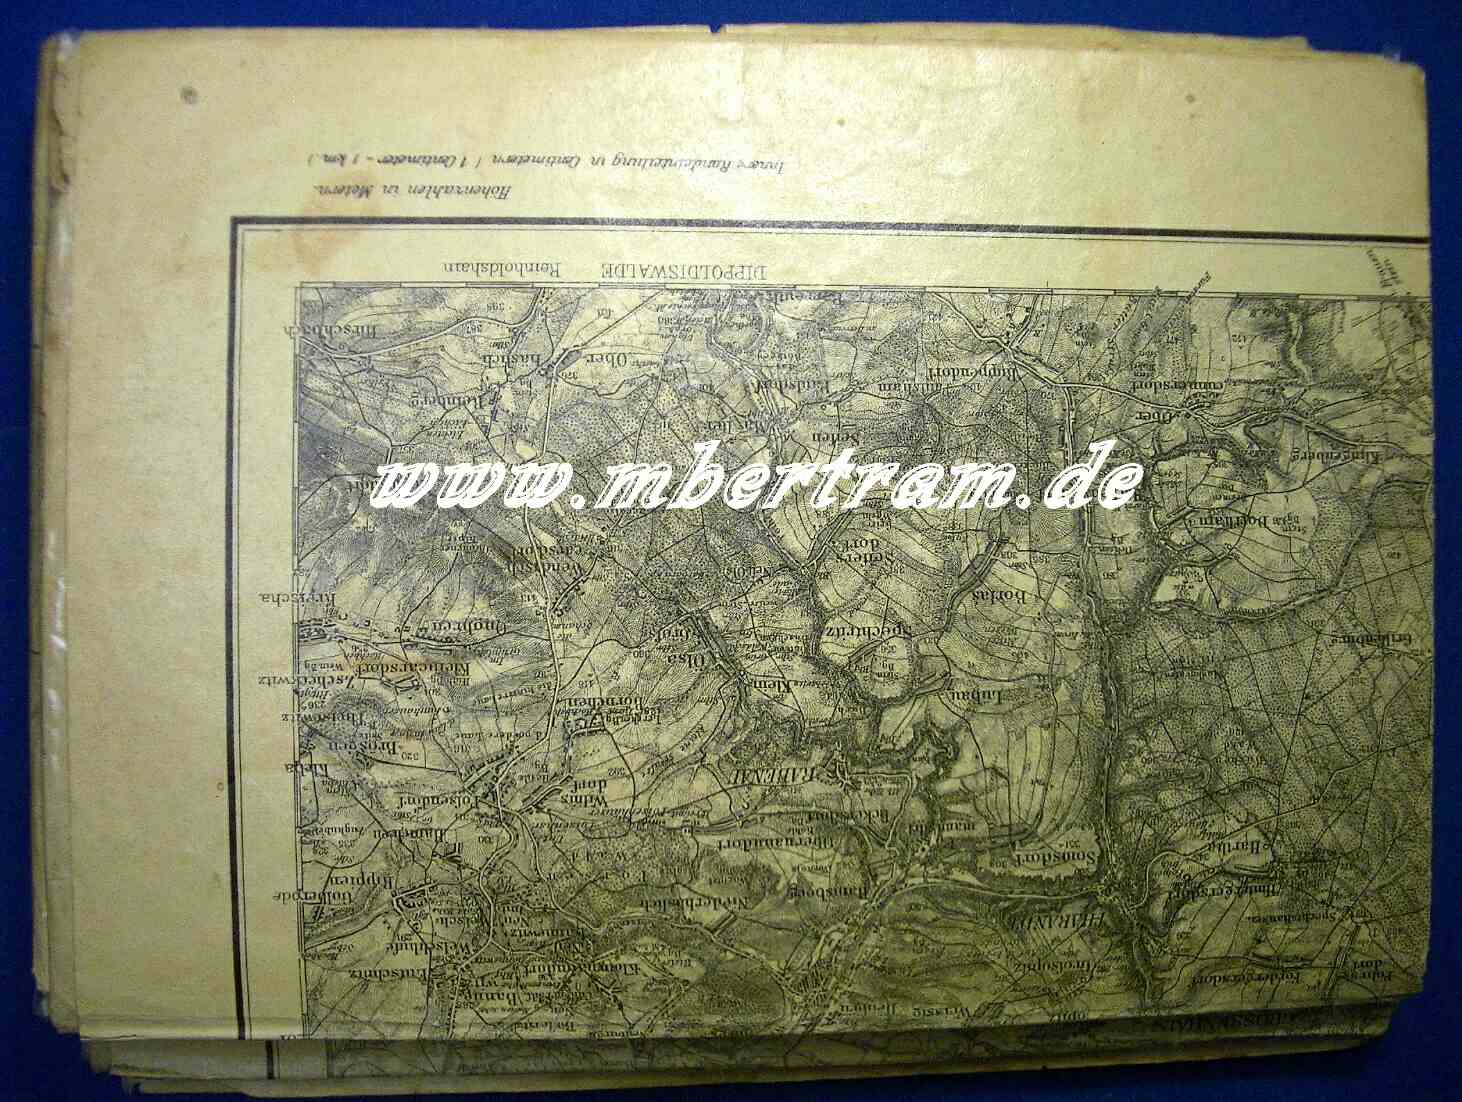 Landkarte für das Kaisermanöver 1912, 1:100000